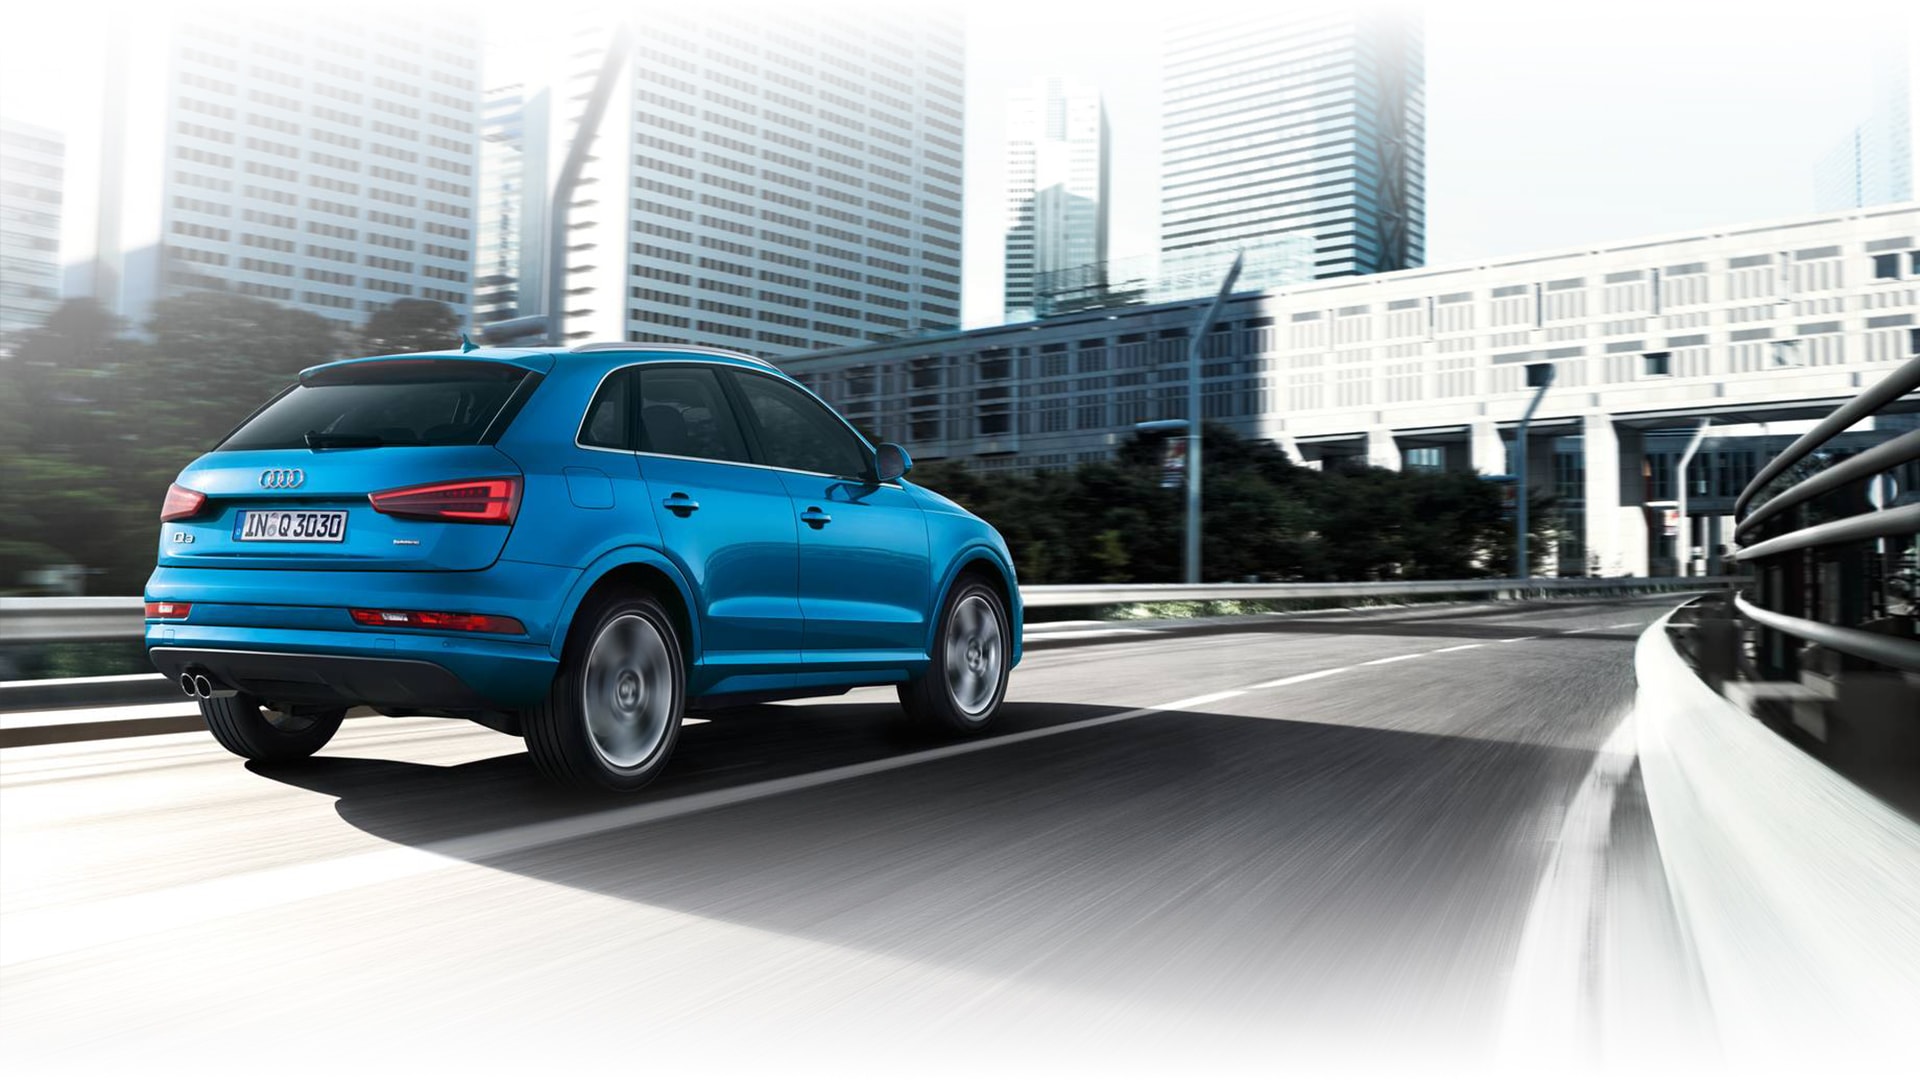 Audi Center Fortaleza continua com ofertas atraentes em alguns modelos da marca. Confira!